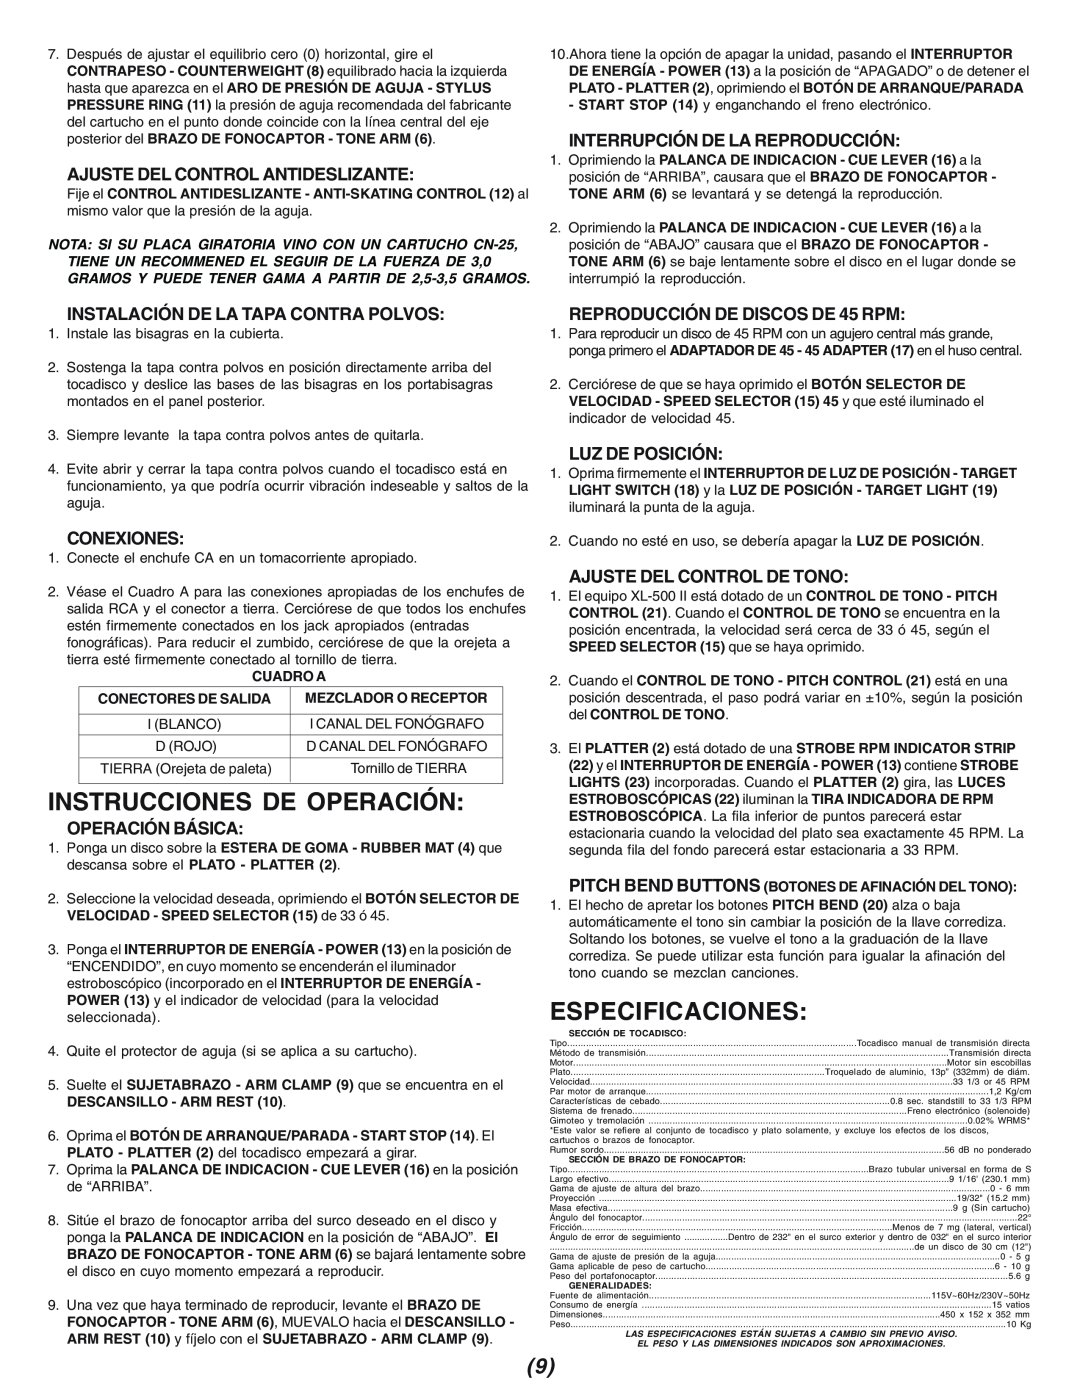 Gemini XL-500II manual Instrucciones De Operación, Especificaciones, Ajuste Del Control Antideslizante, Conexiones 